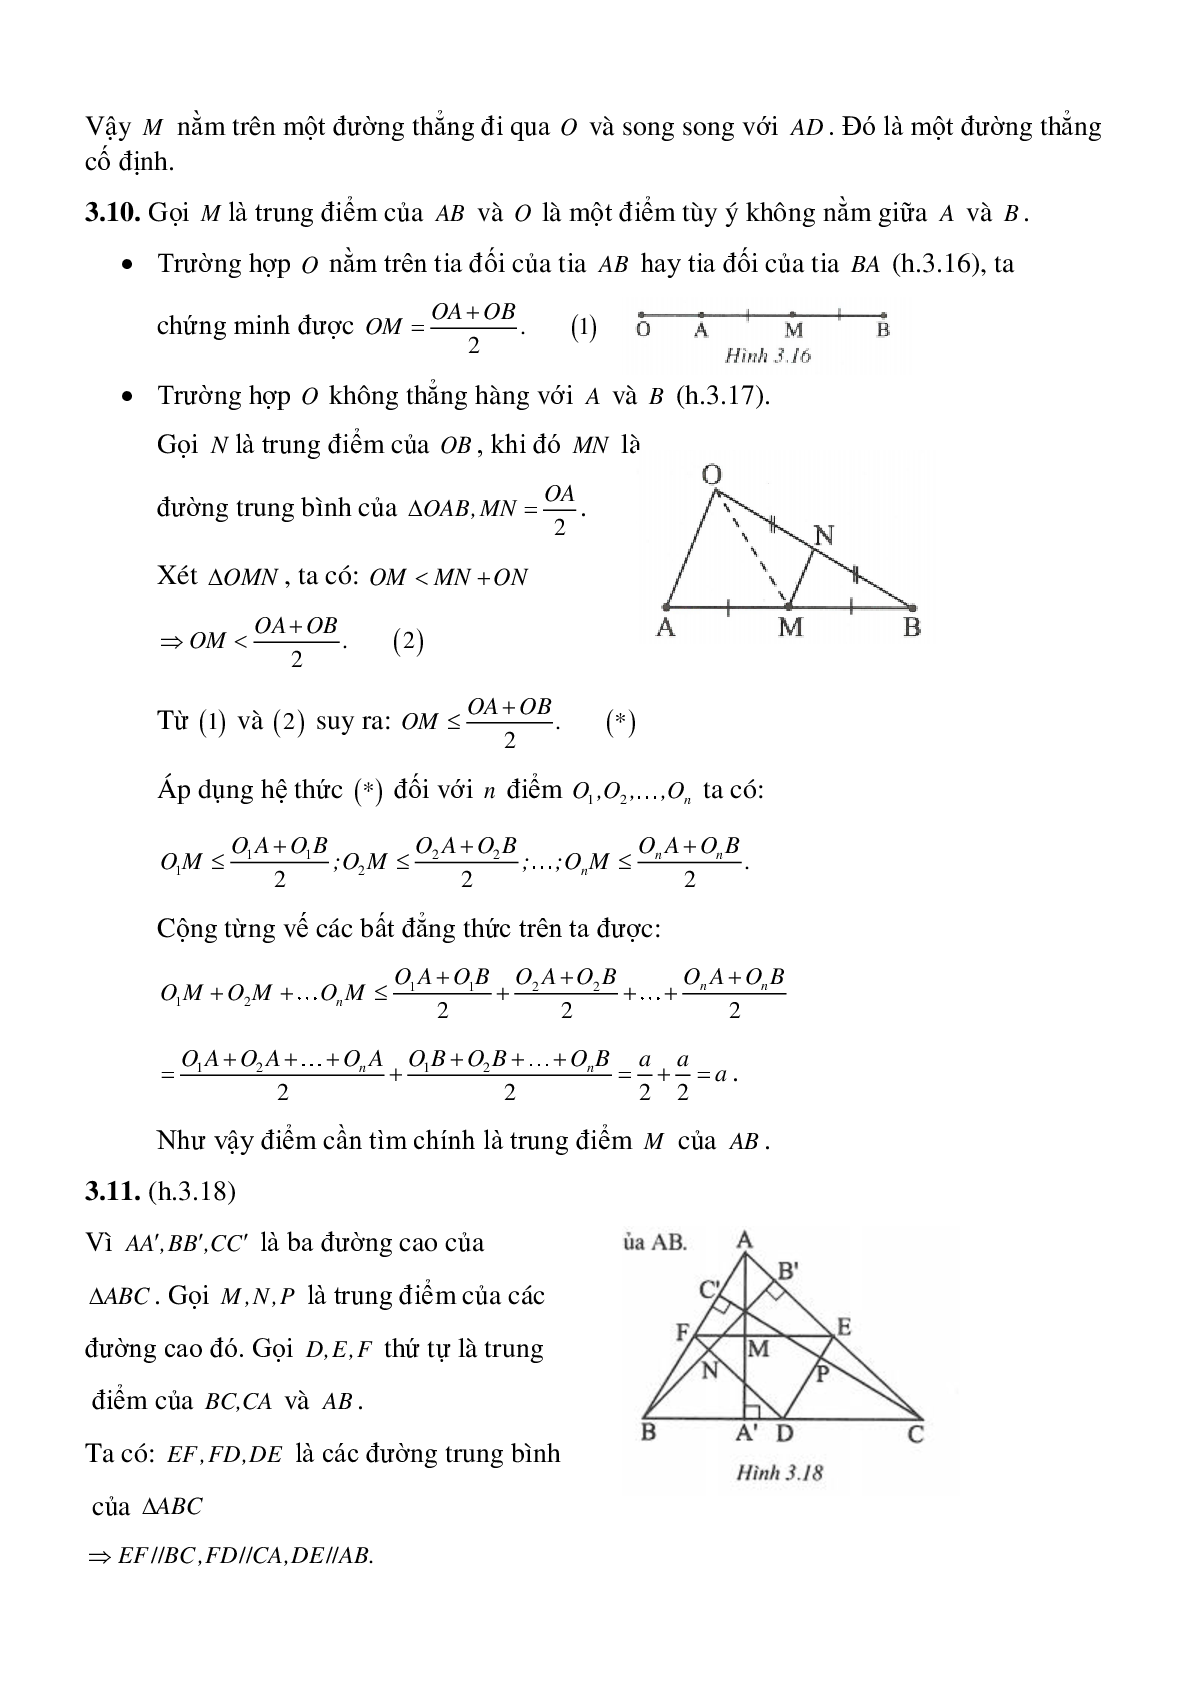 Đường trung bình của tam giác, của hình thang (trang 10)